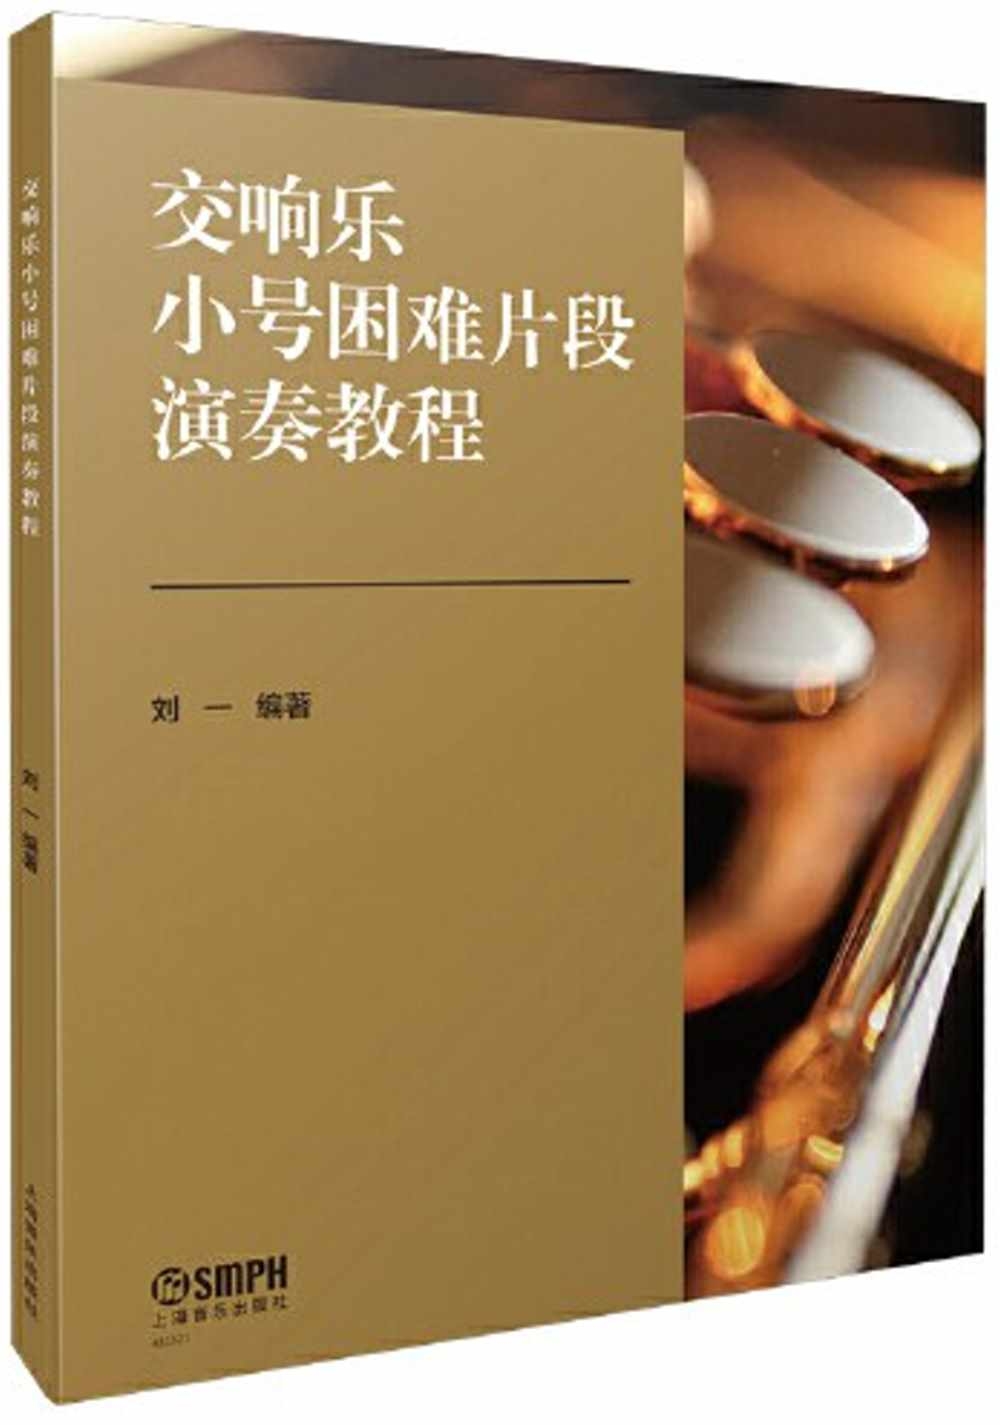 交響樂小號困難片段演奏教程(共兩冊)